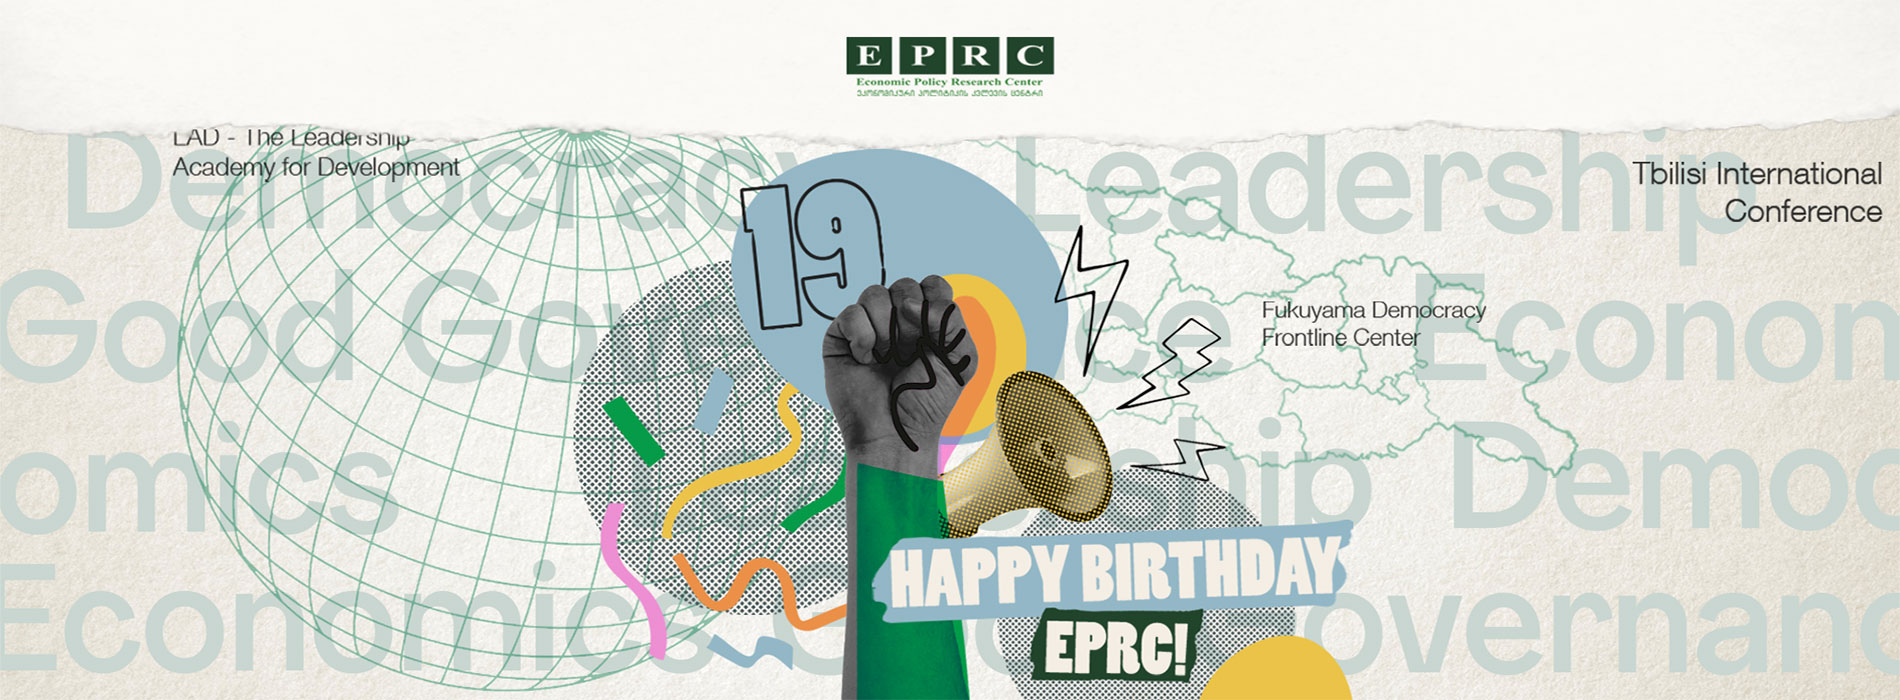 EPRC-ის დაბადების დღეა!